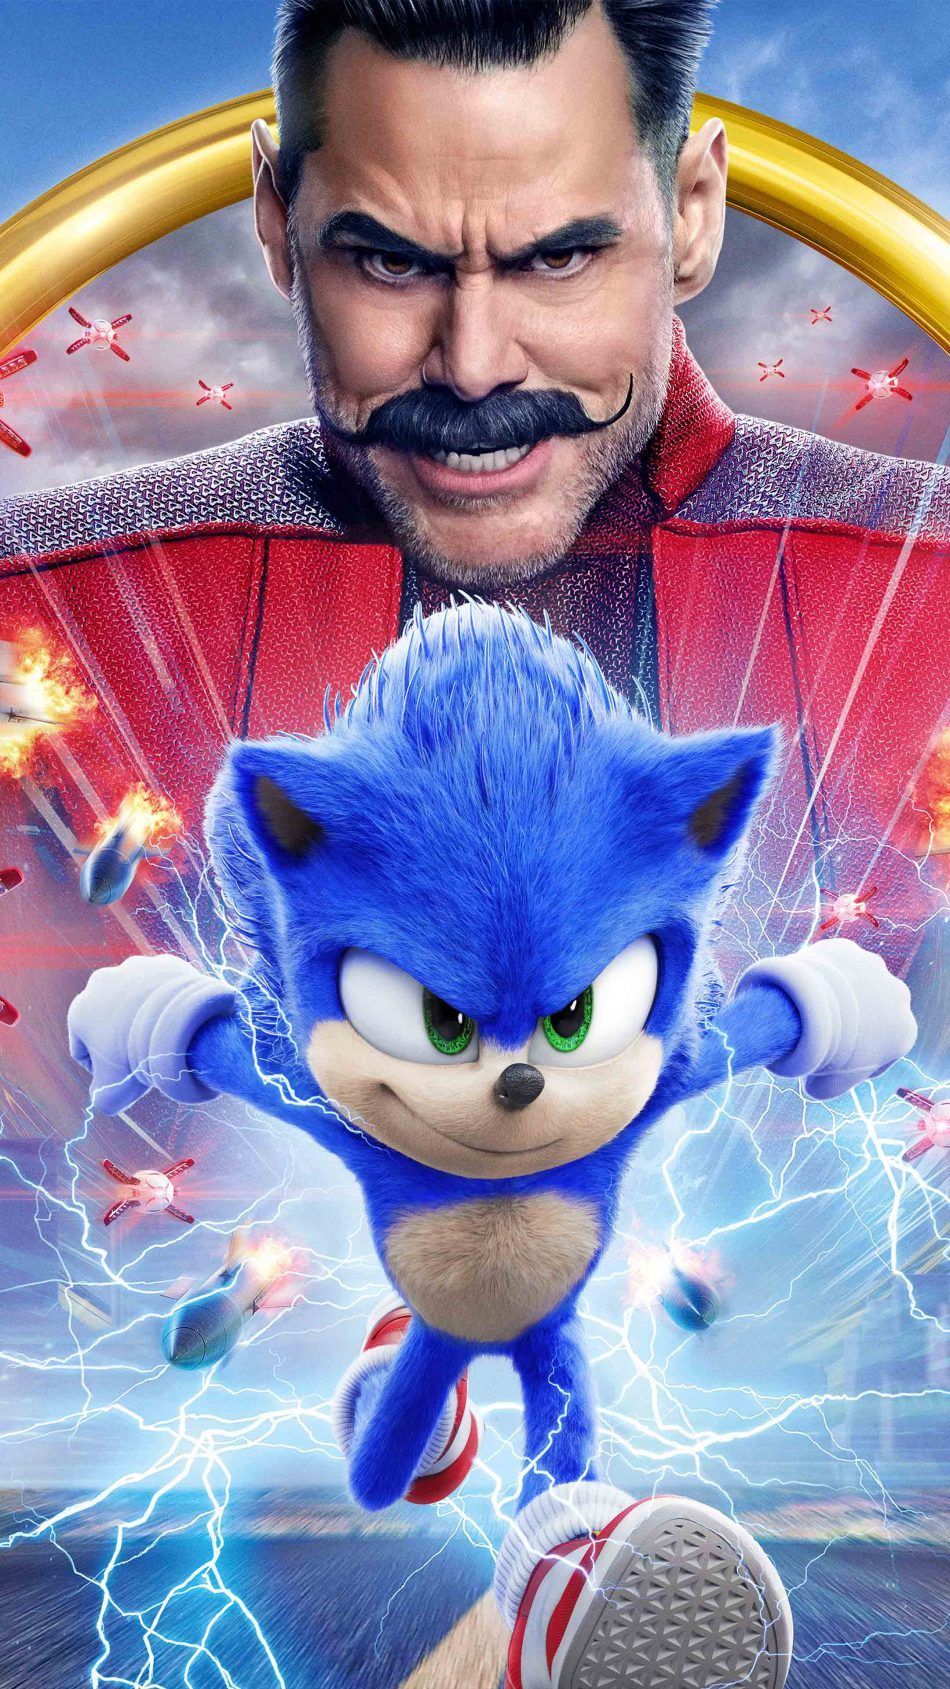 Sonic The Hedgehog 2020. Sonic the hedgehog, Hedgehog, Hedgehog movie